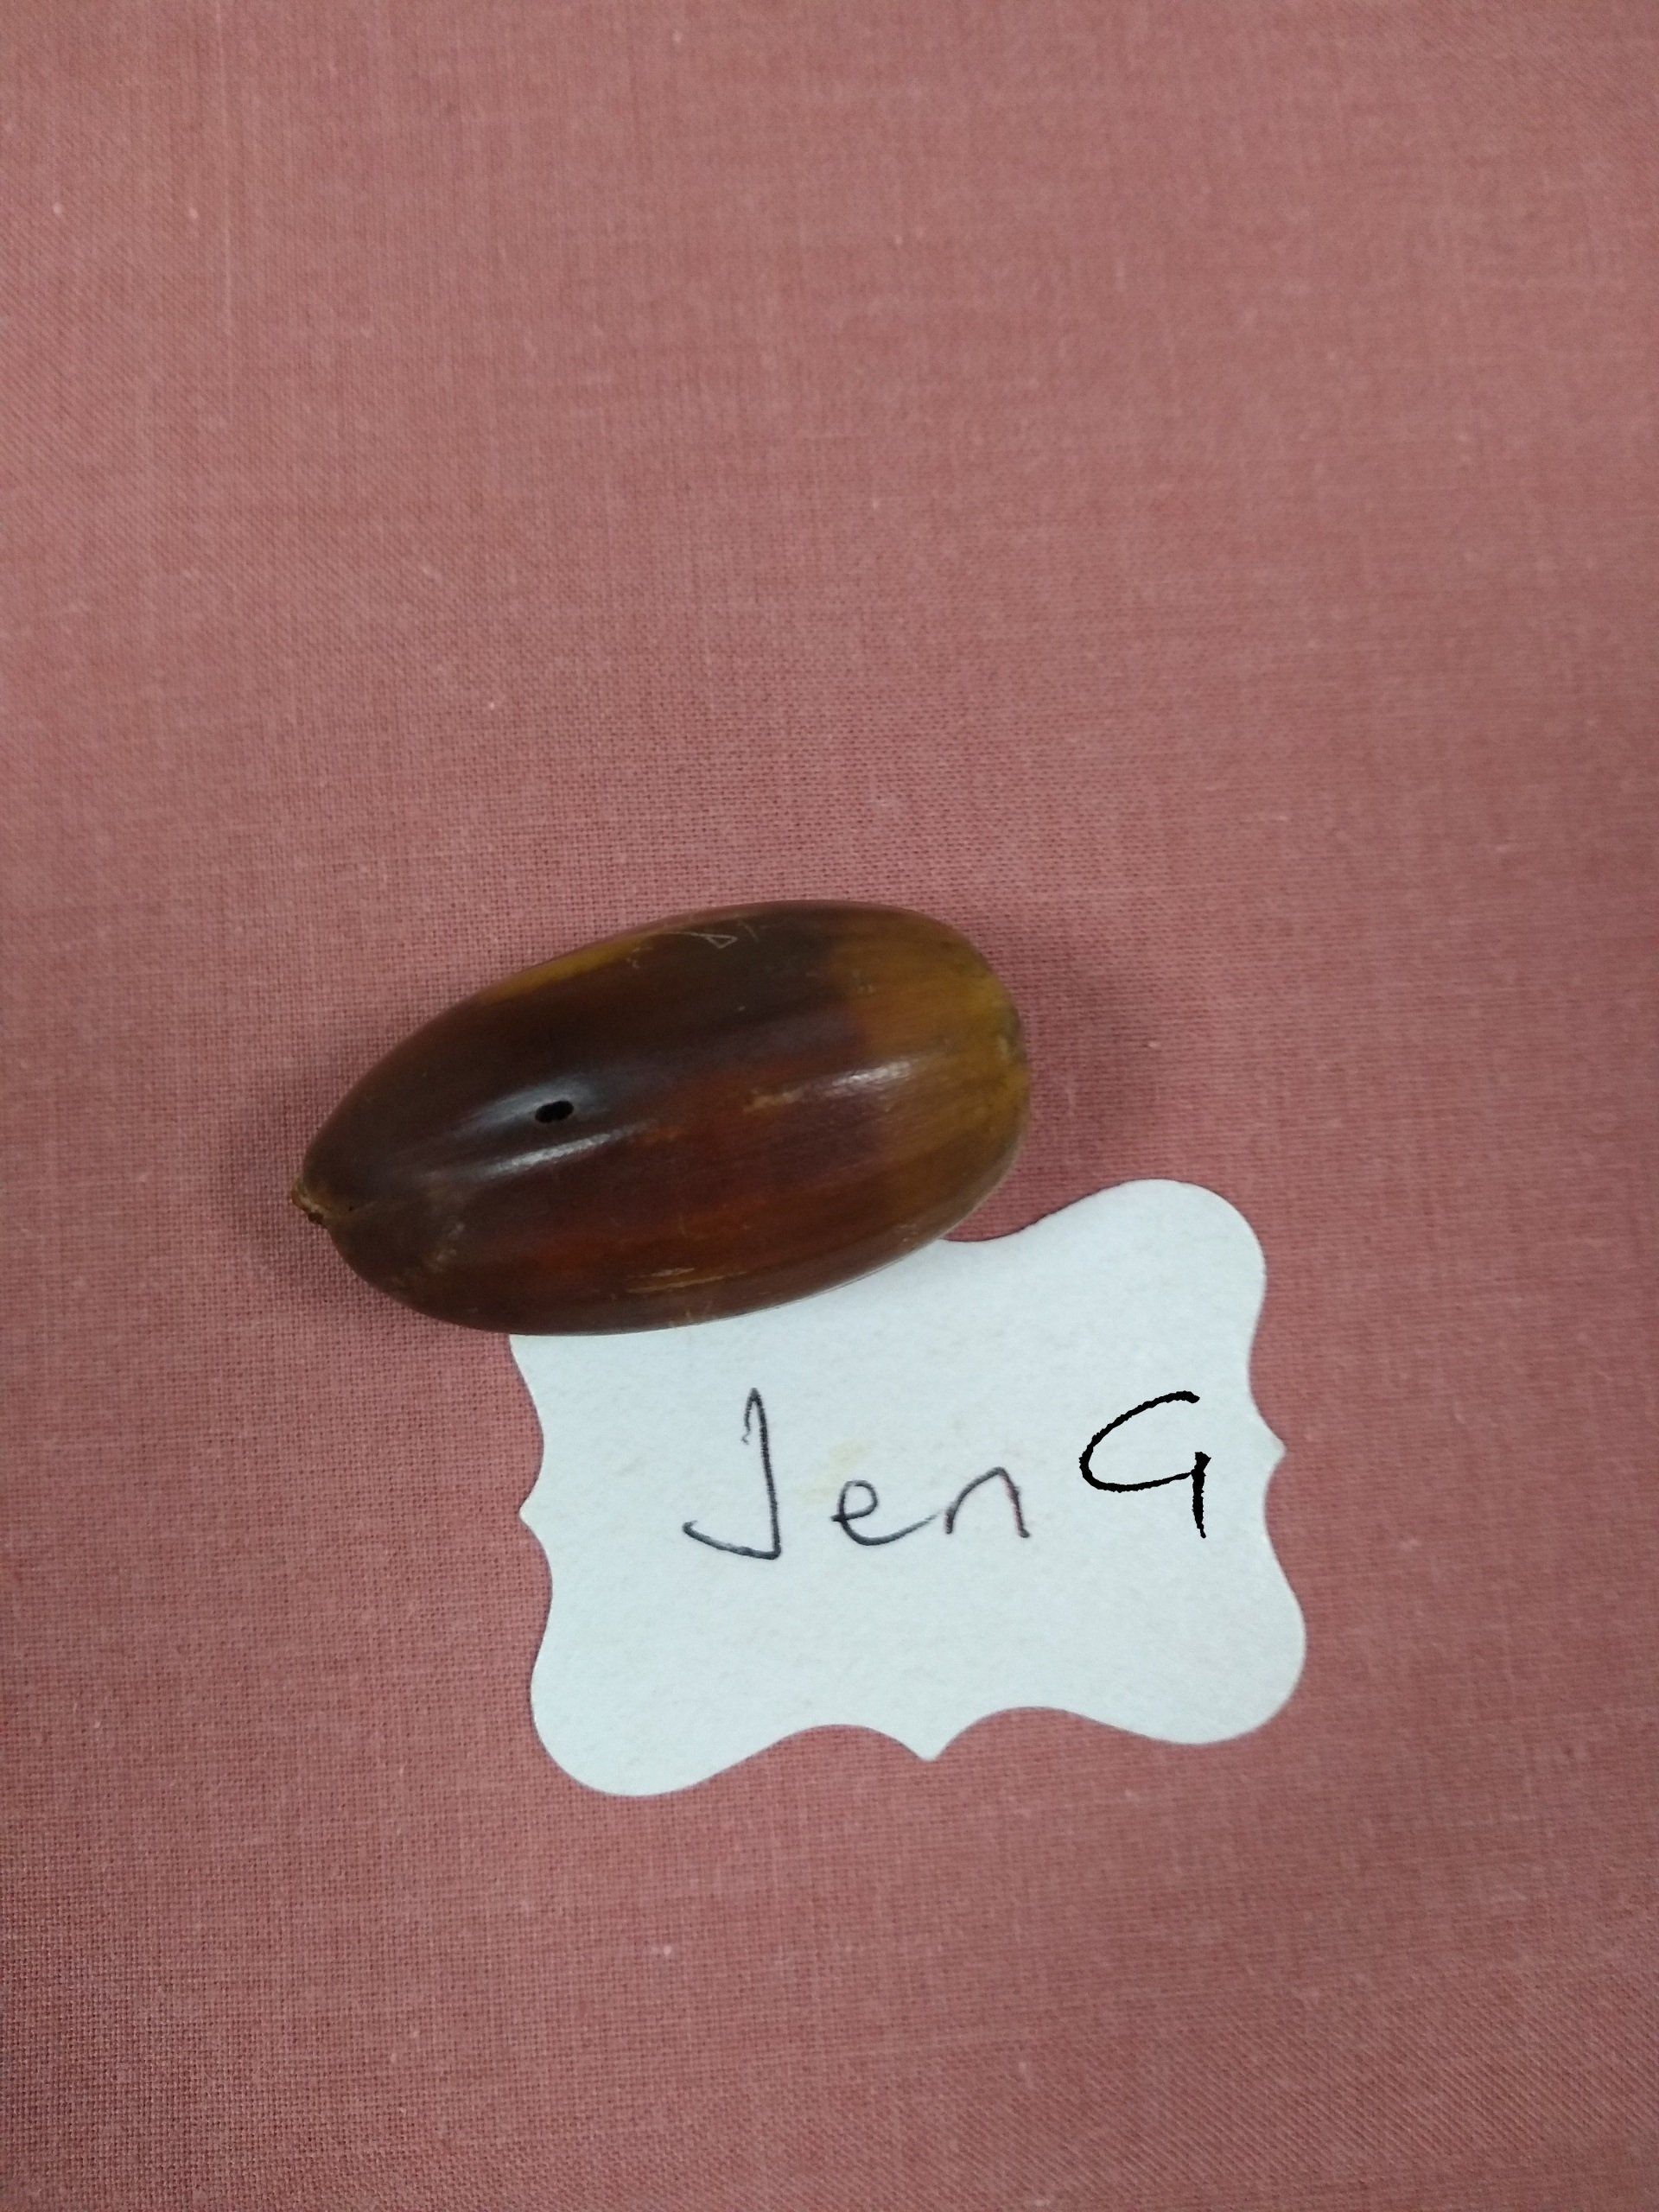 Jen G''s winning acorn